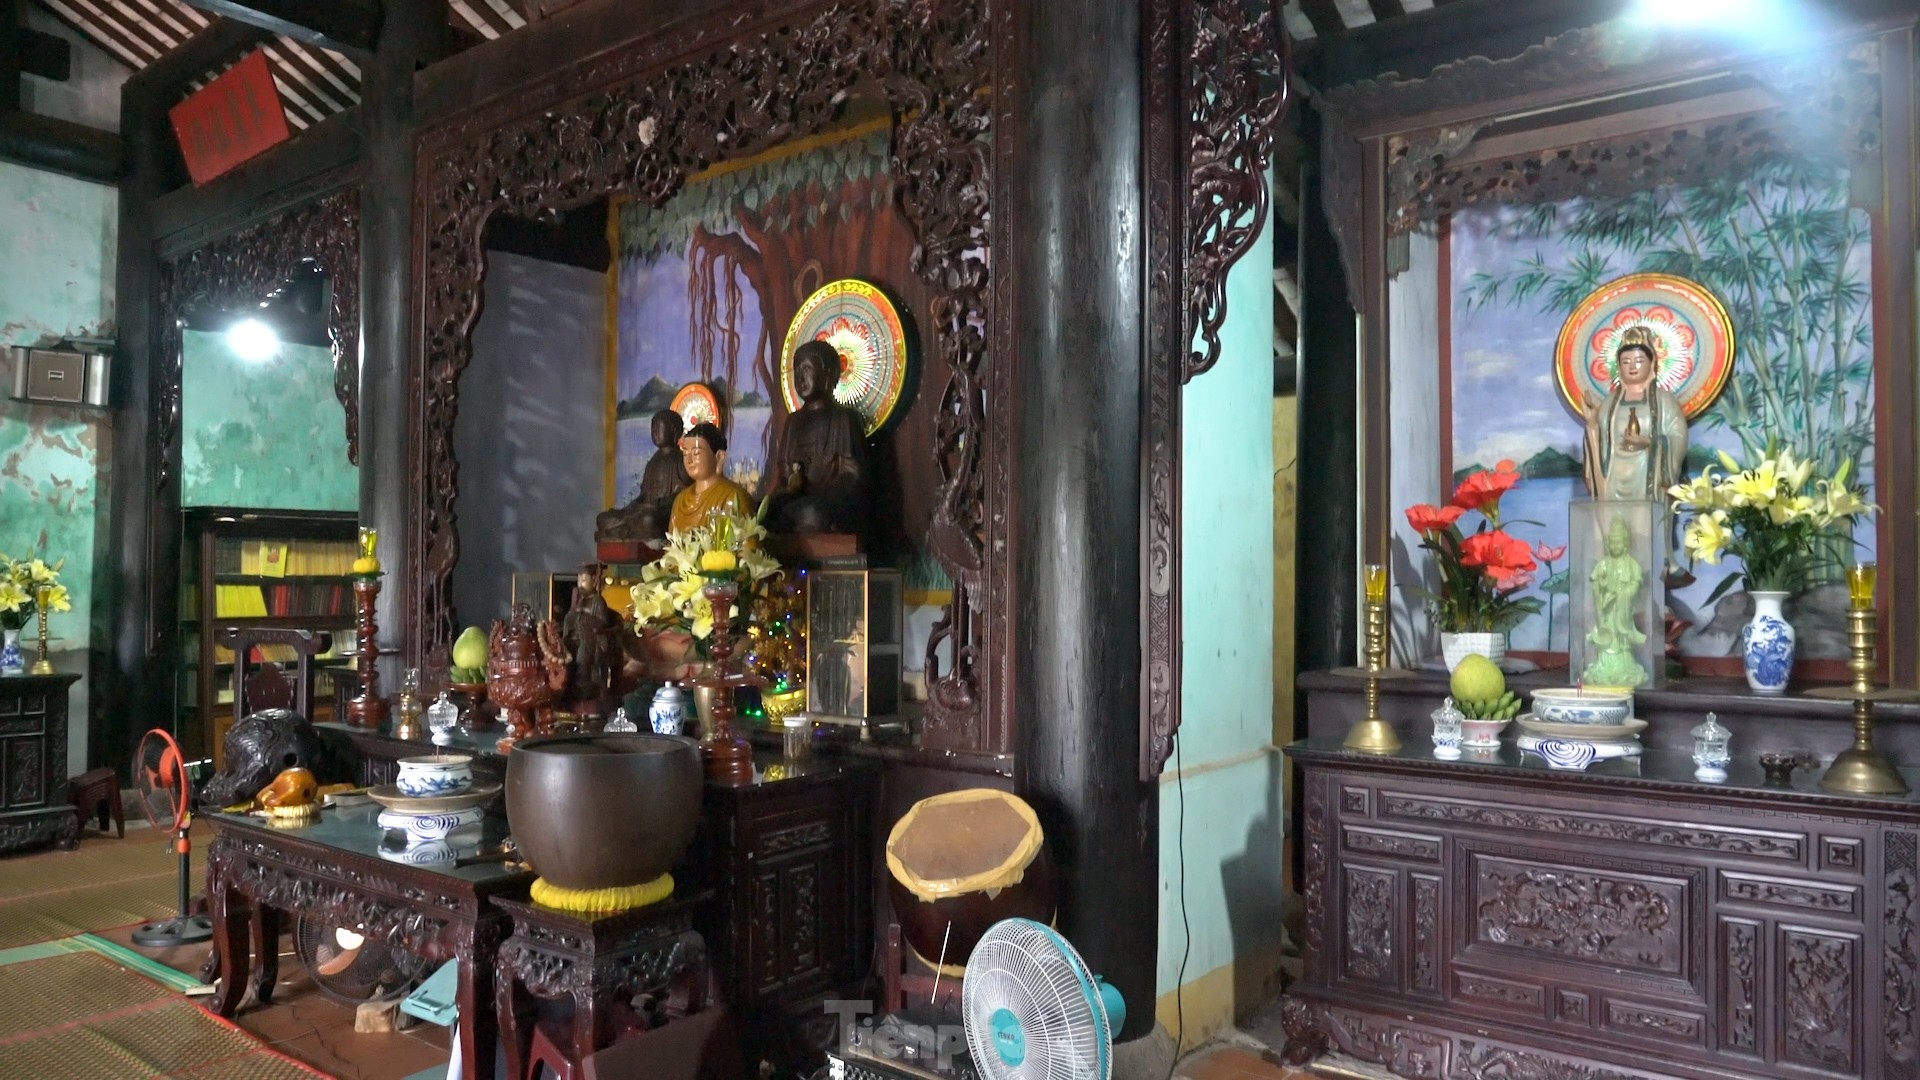 Chùa Hải Tạng - ngôi cổ tự linh thiêng gần 300 năm tuổi, điểm đến tâm linh ấn tượng với '4 không' - Ảnh 11.